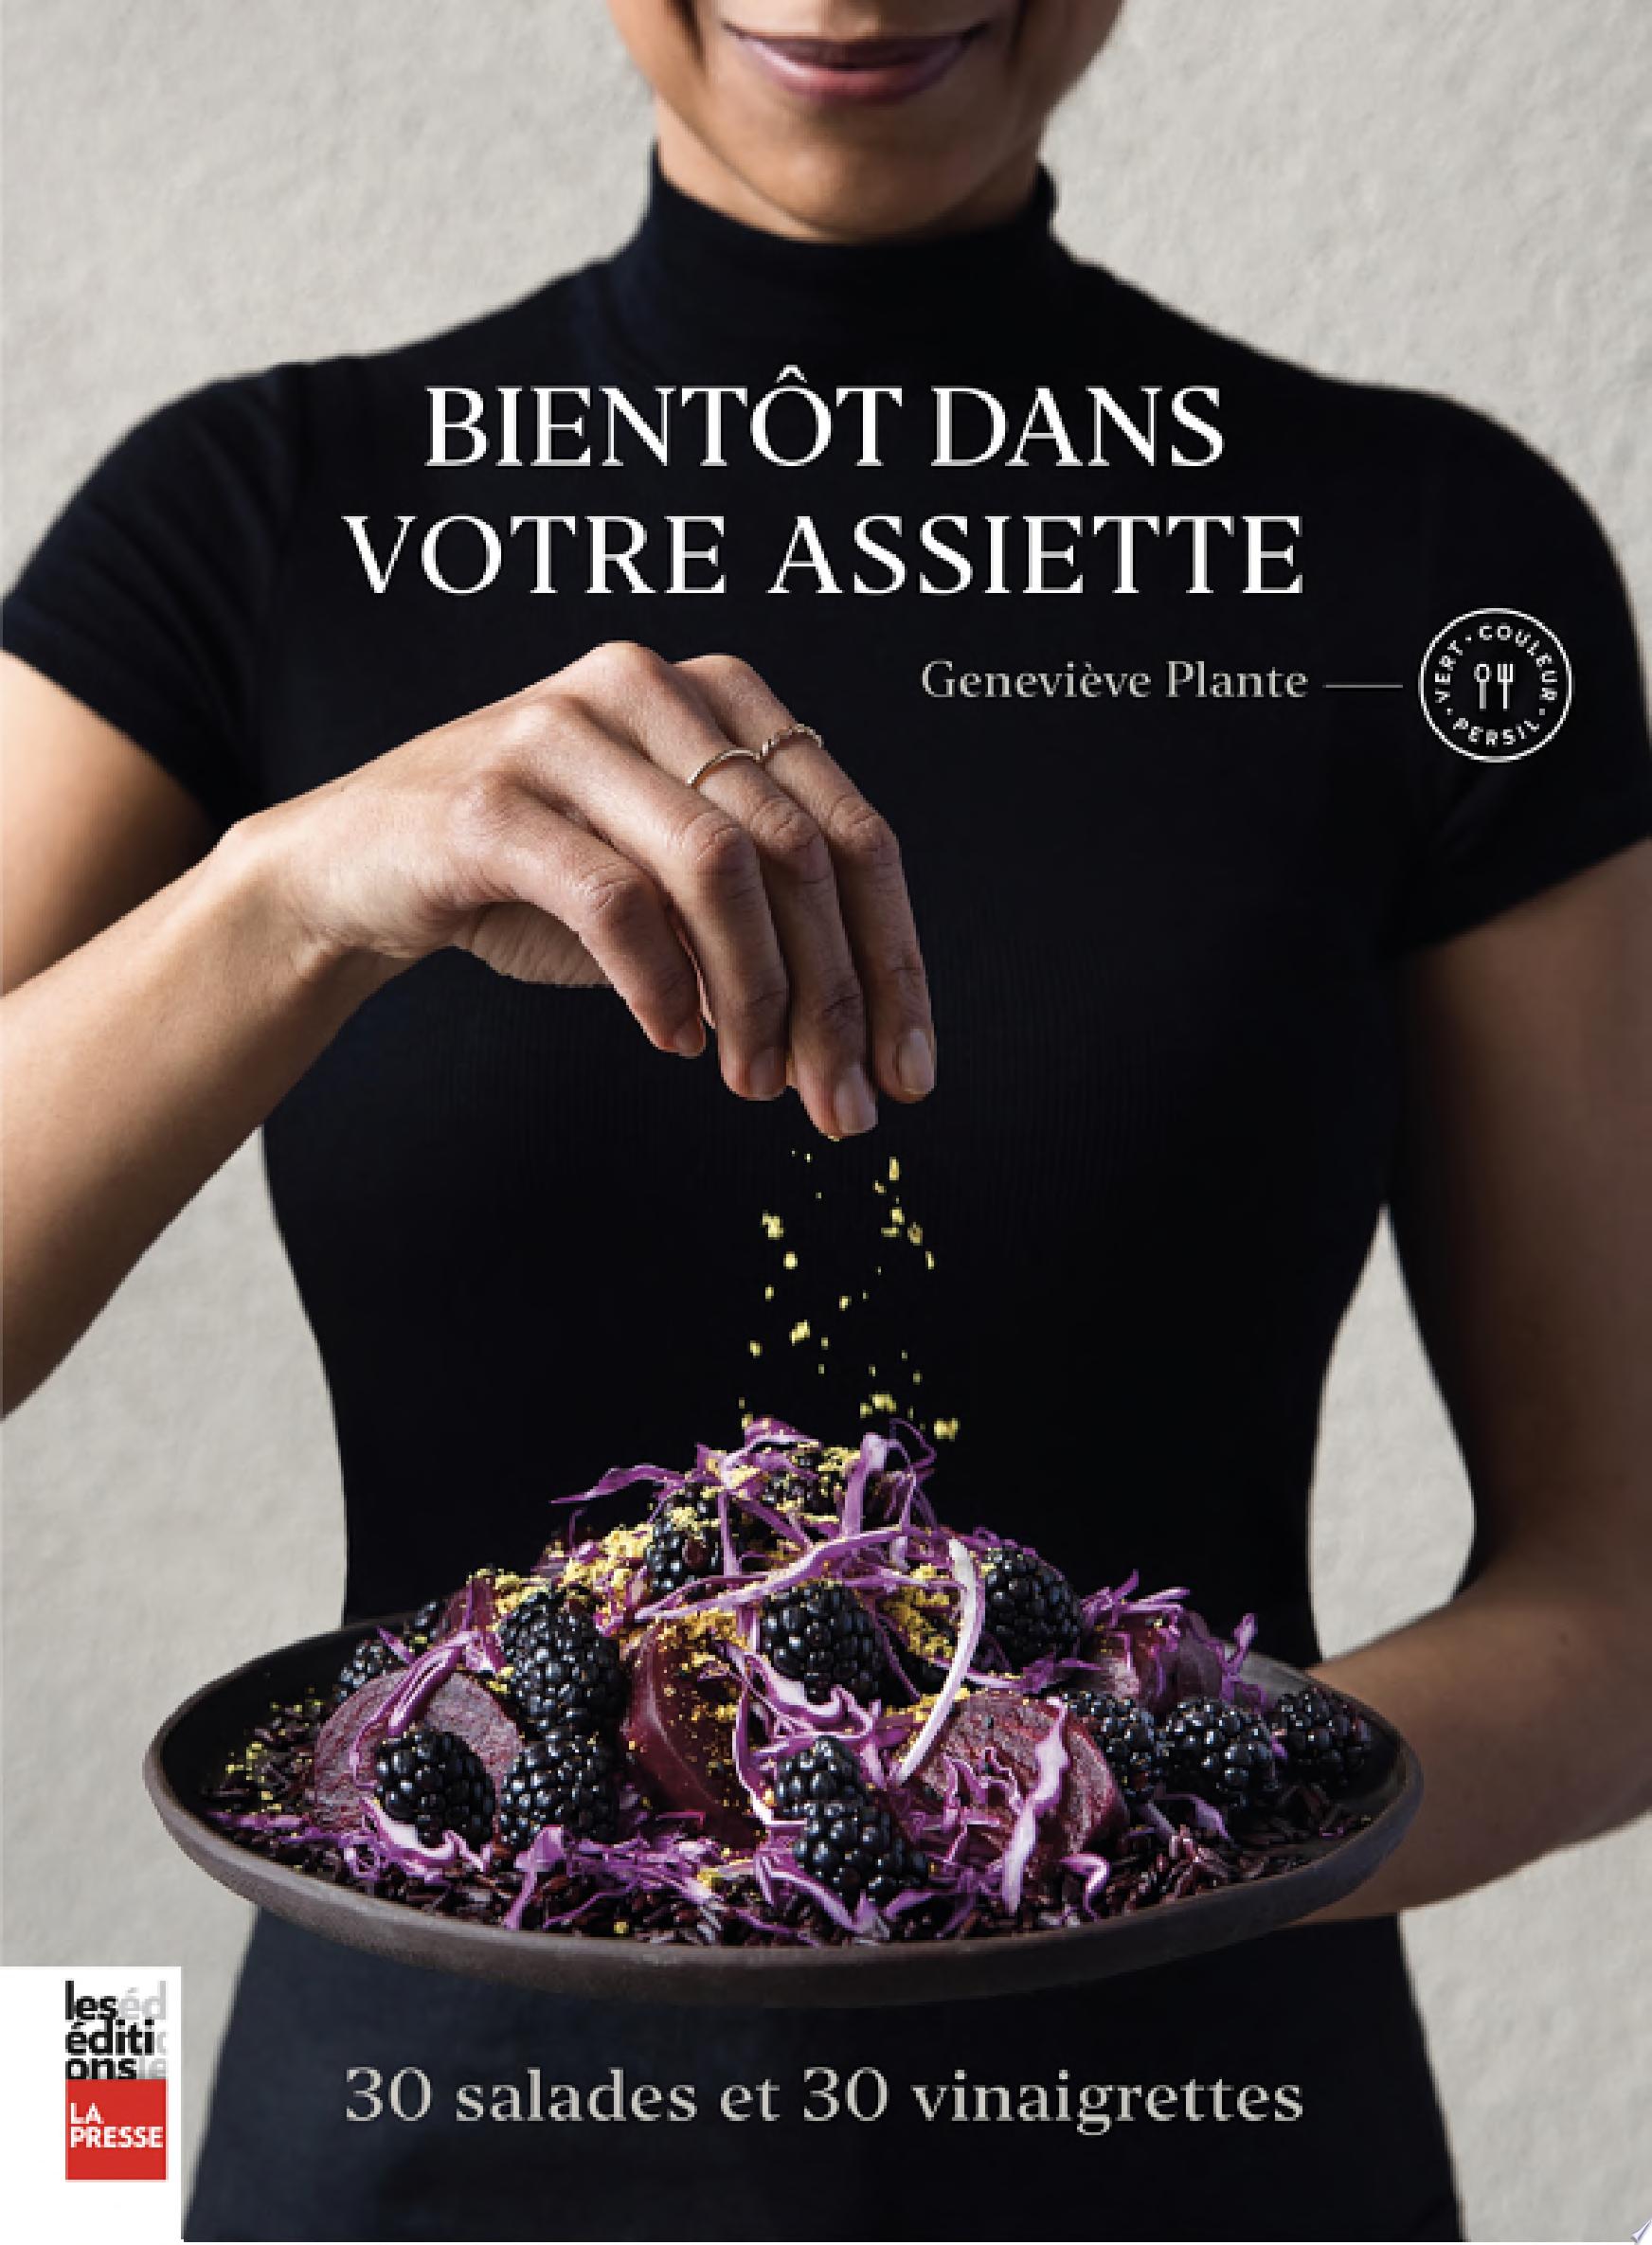 Image for "Bientôt dans votre assiette"